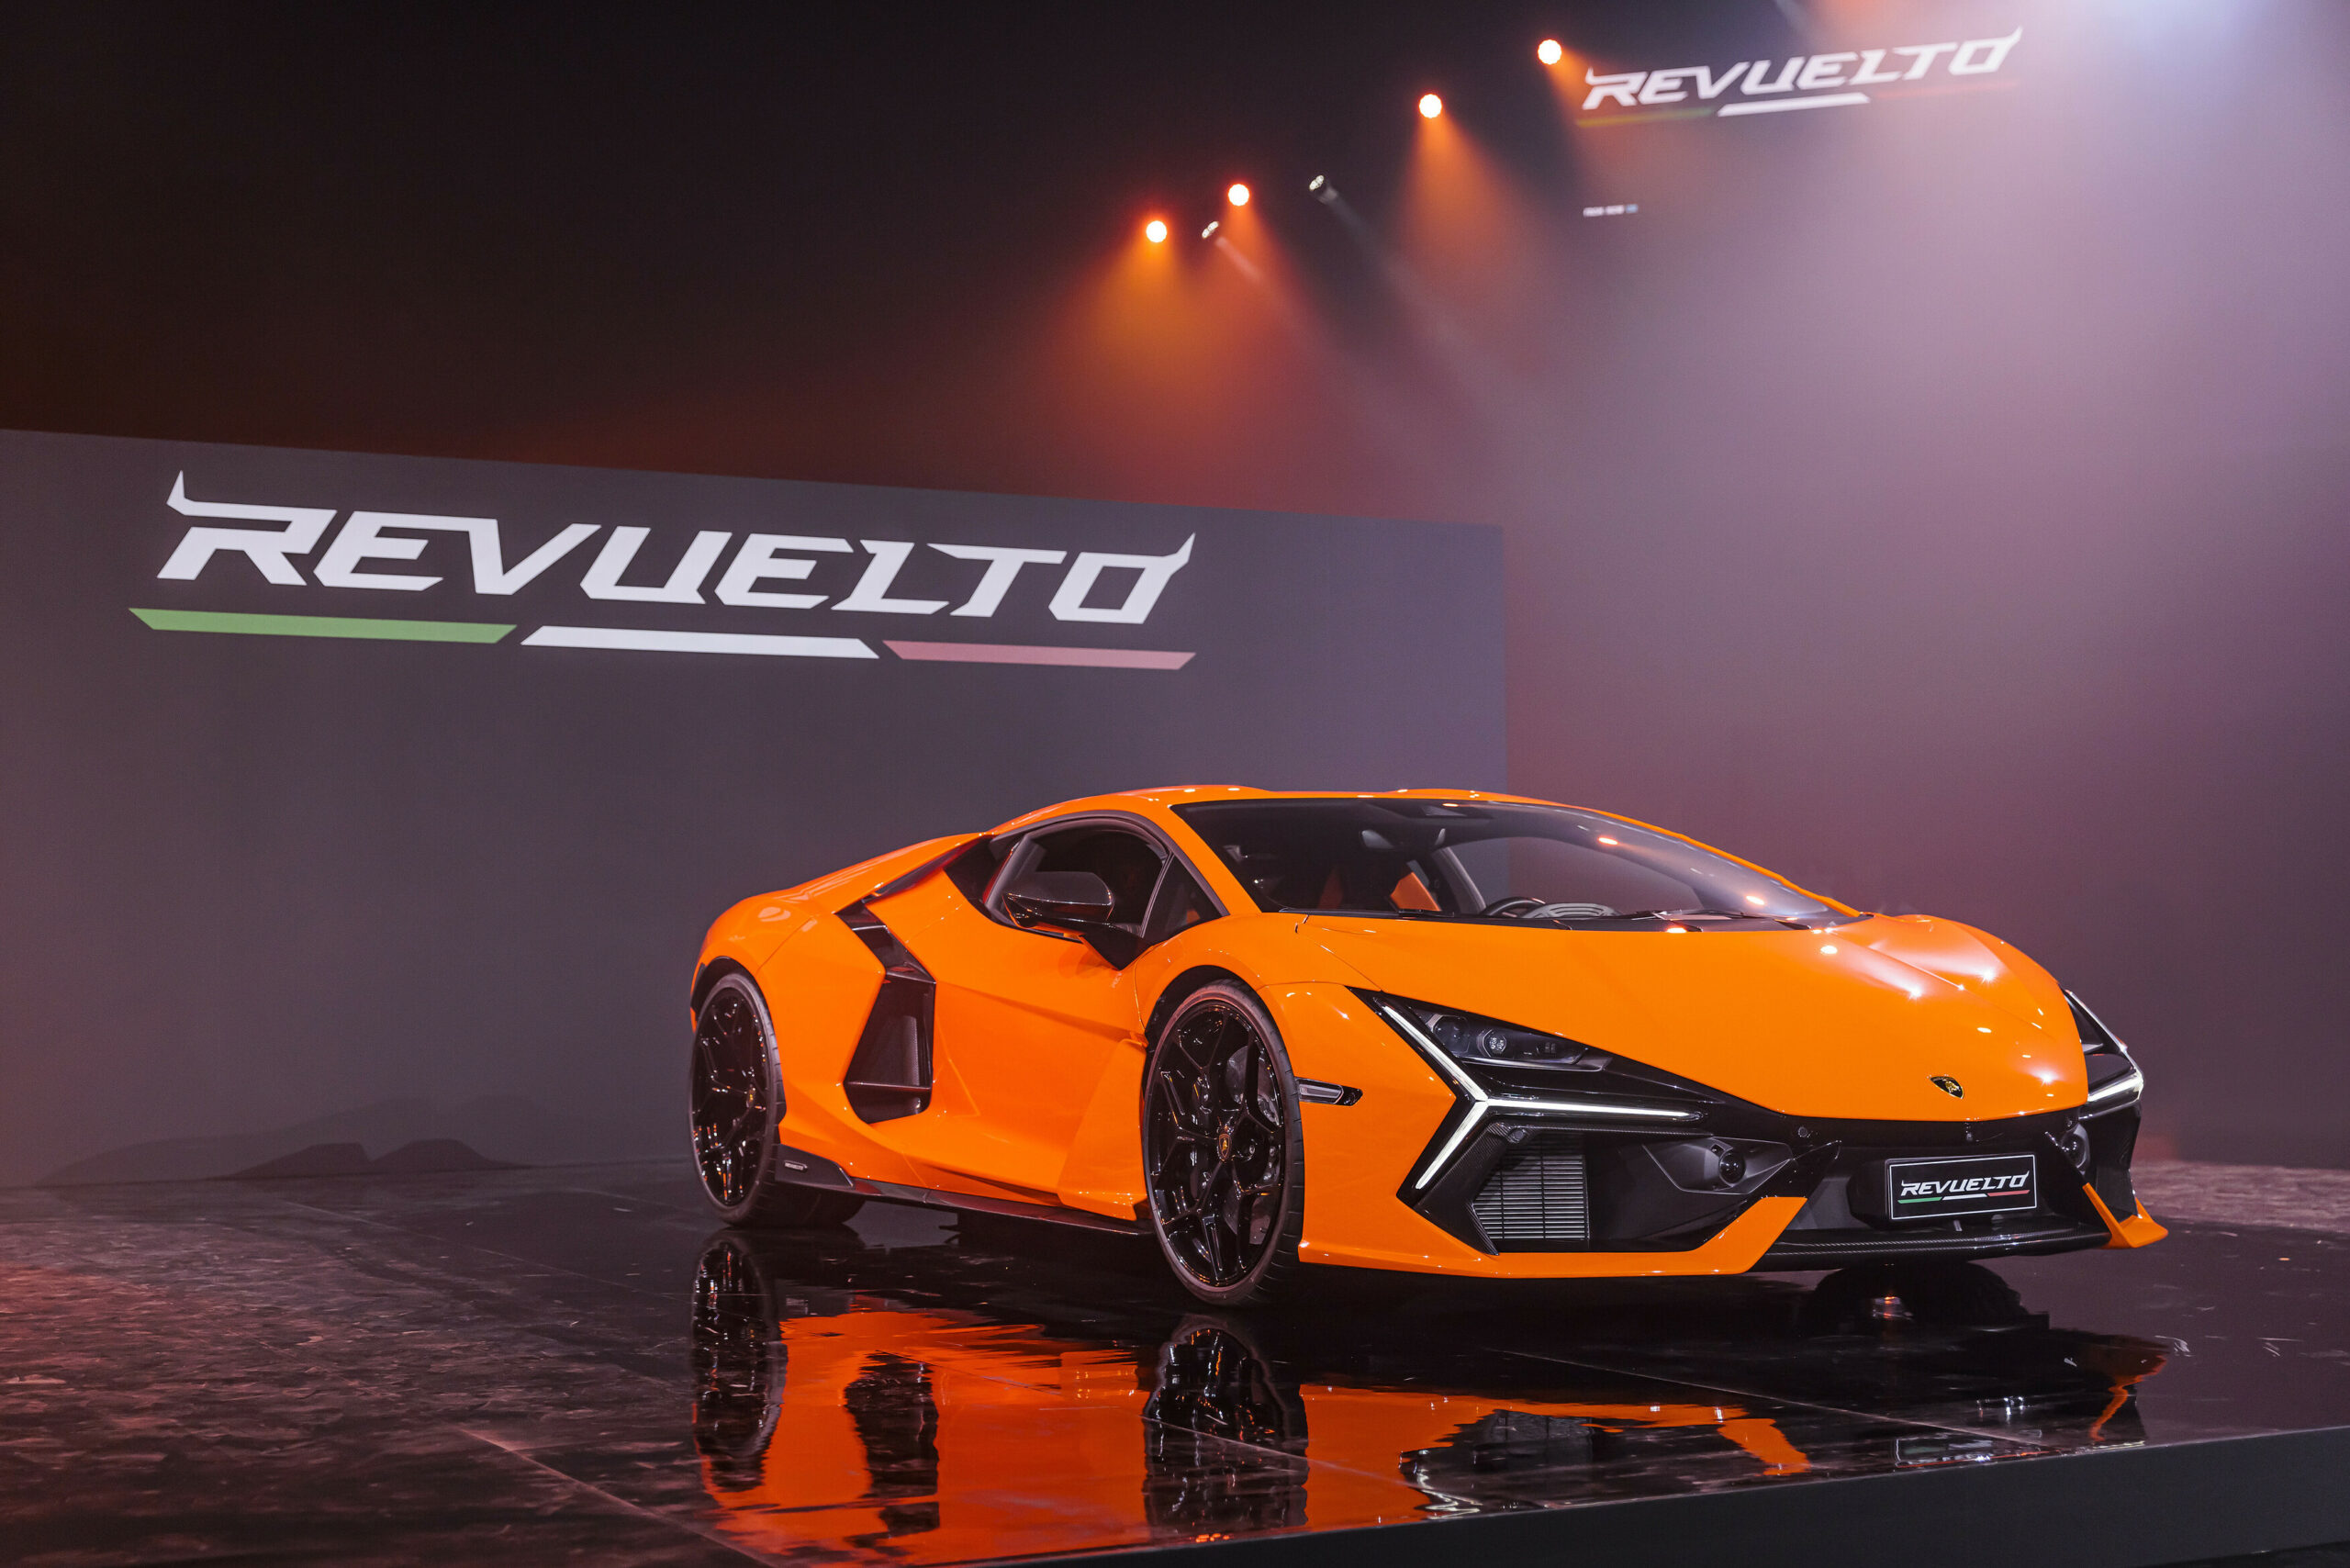 Urus and Huracán lead Automobili Lamborghinis record results in